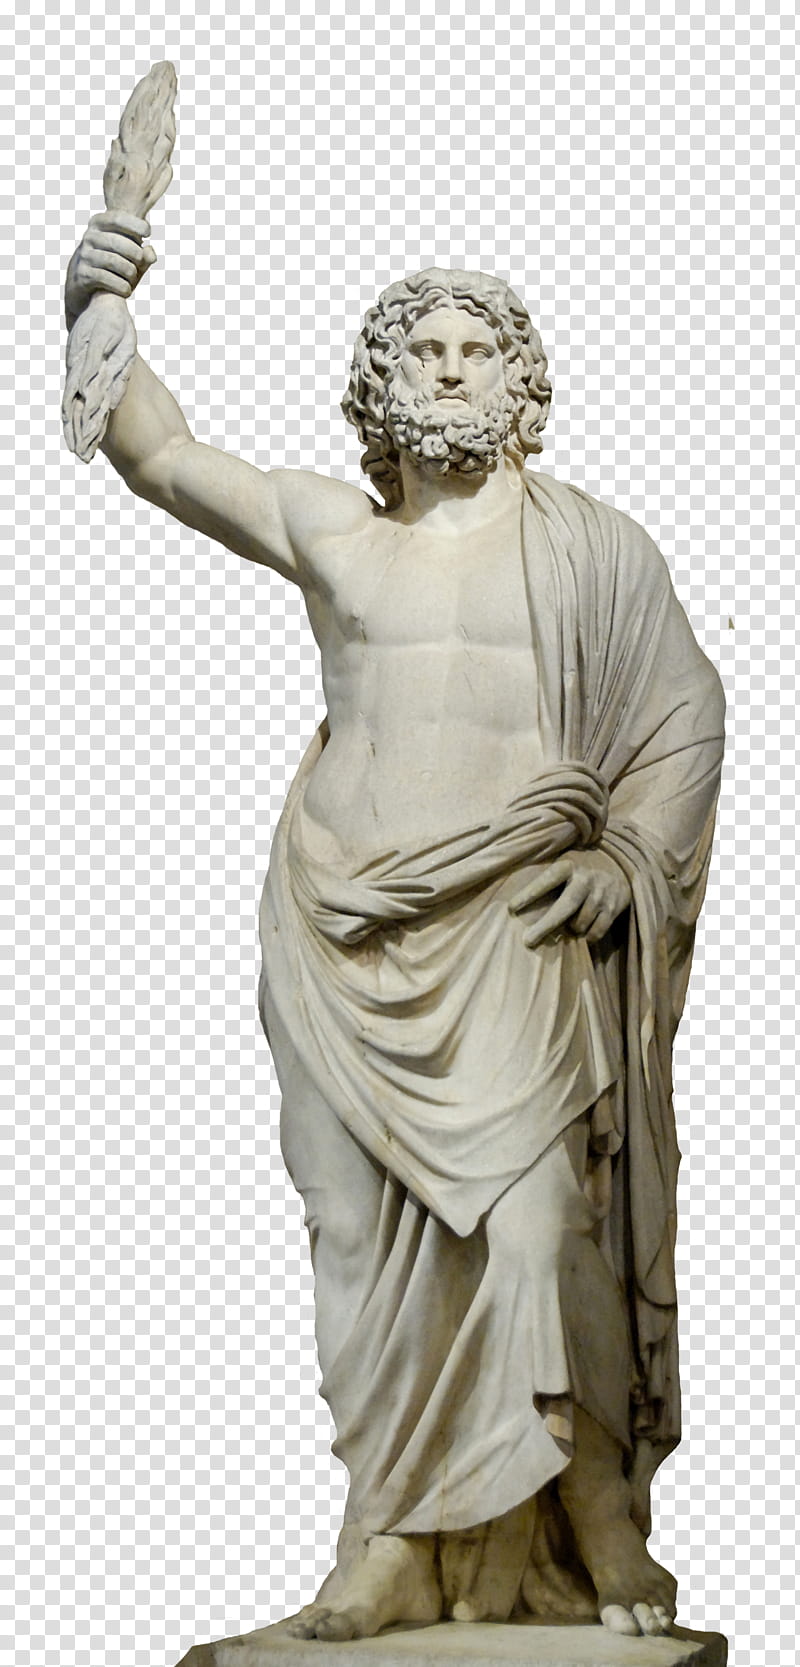 Statue Zeus , gray man statue transparent background PNG clipart